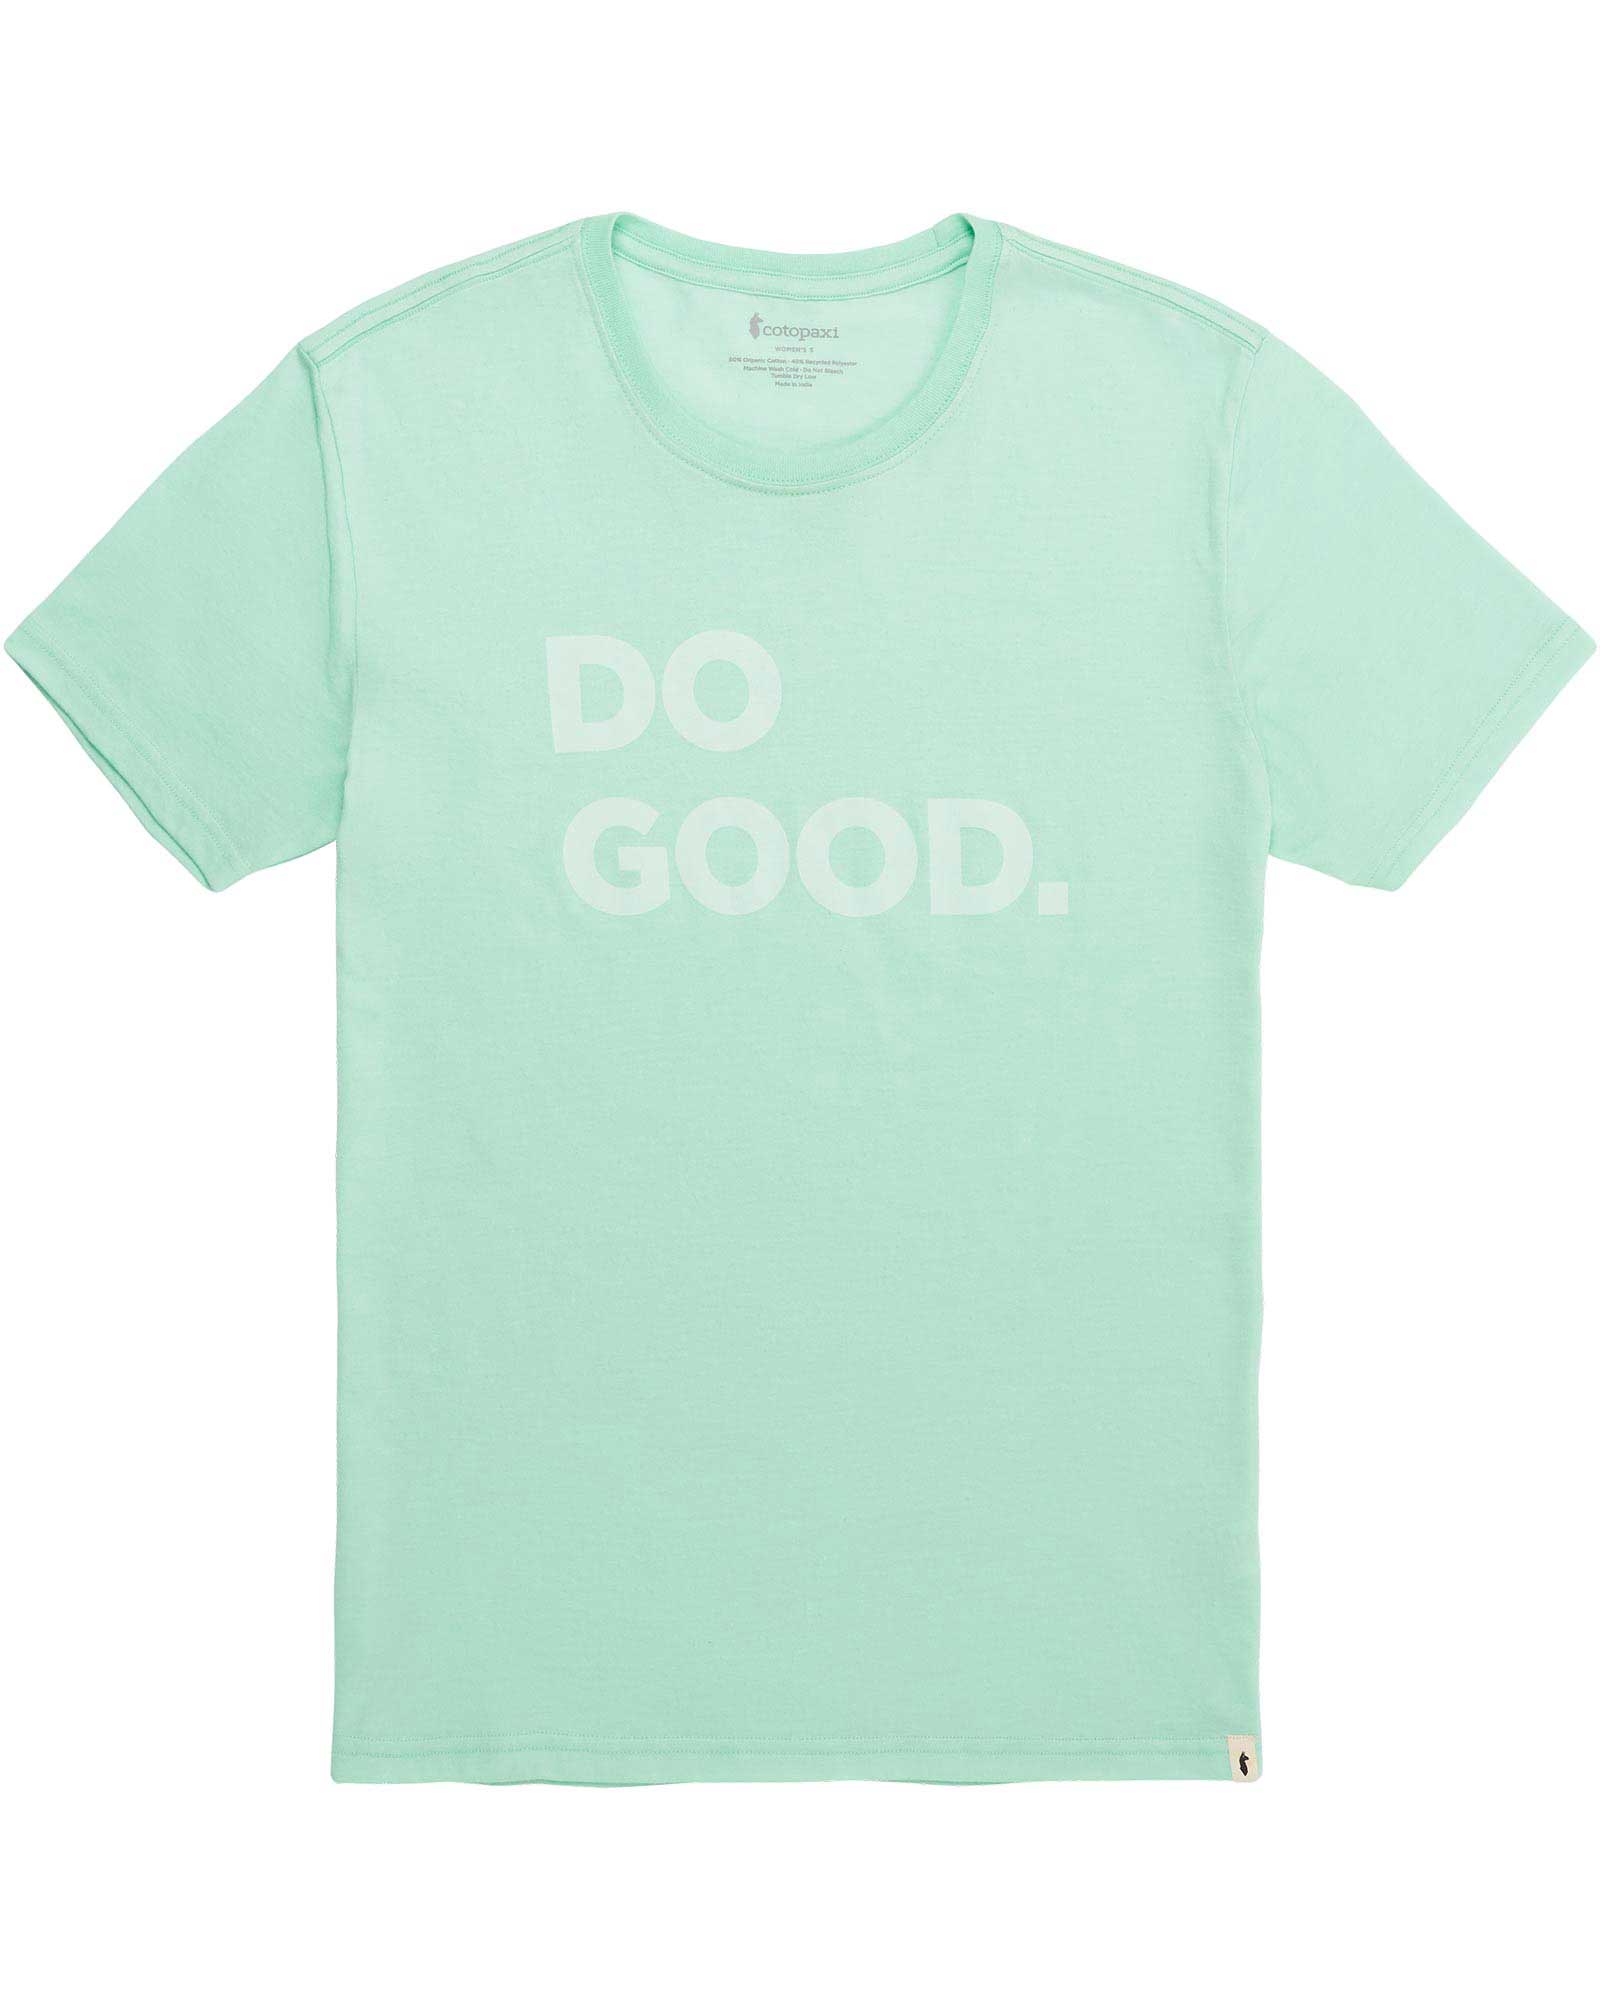 Cotopaxi Do Good Womens T-shirt